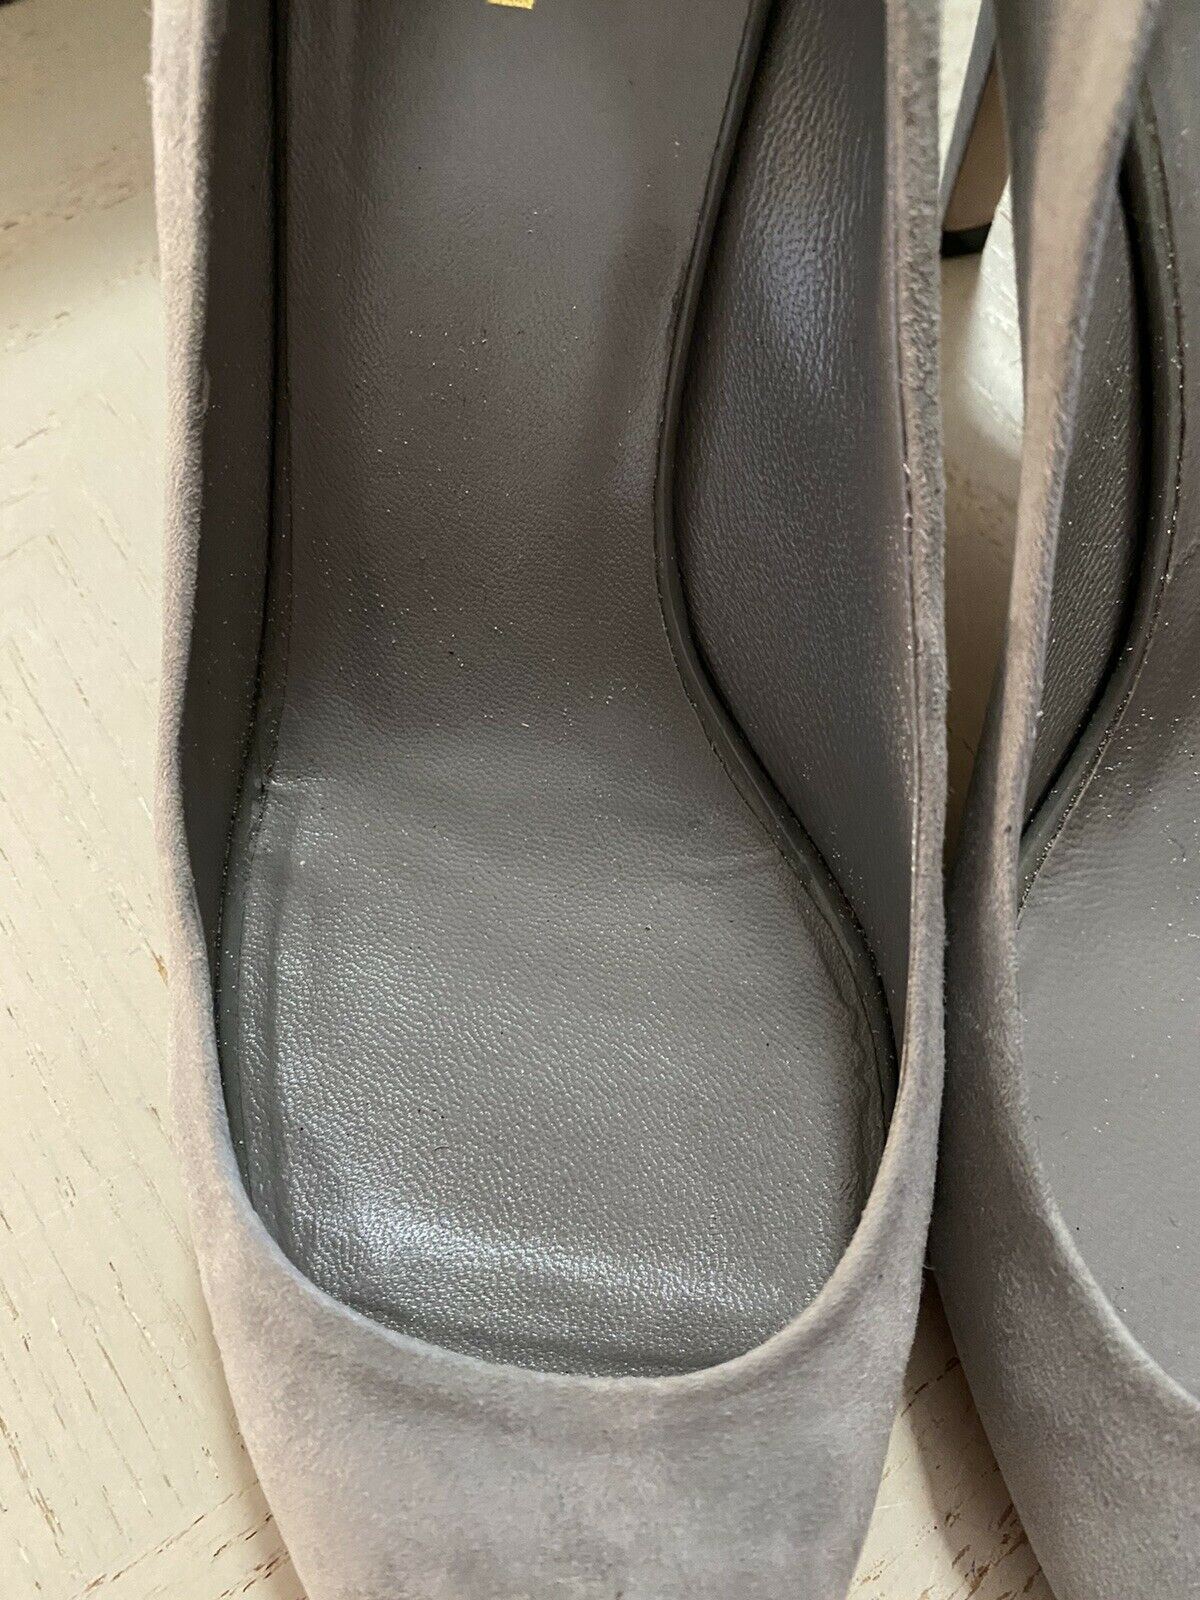 Gucci Damen-Loafer-Schuhe, Grau, 8 US (38 Eu), Italien